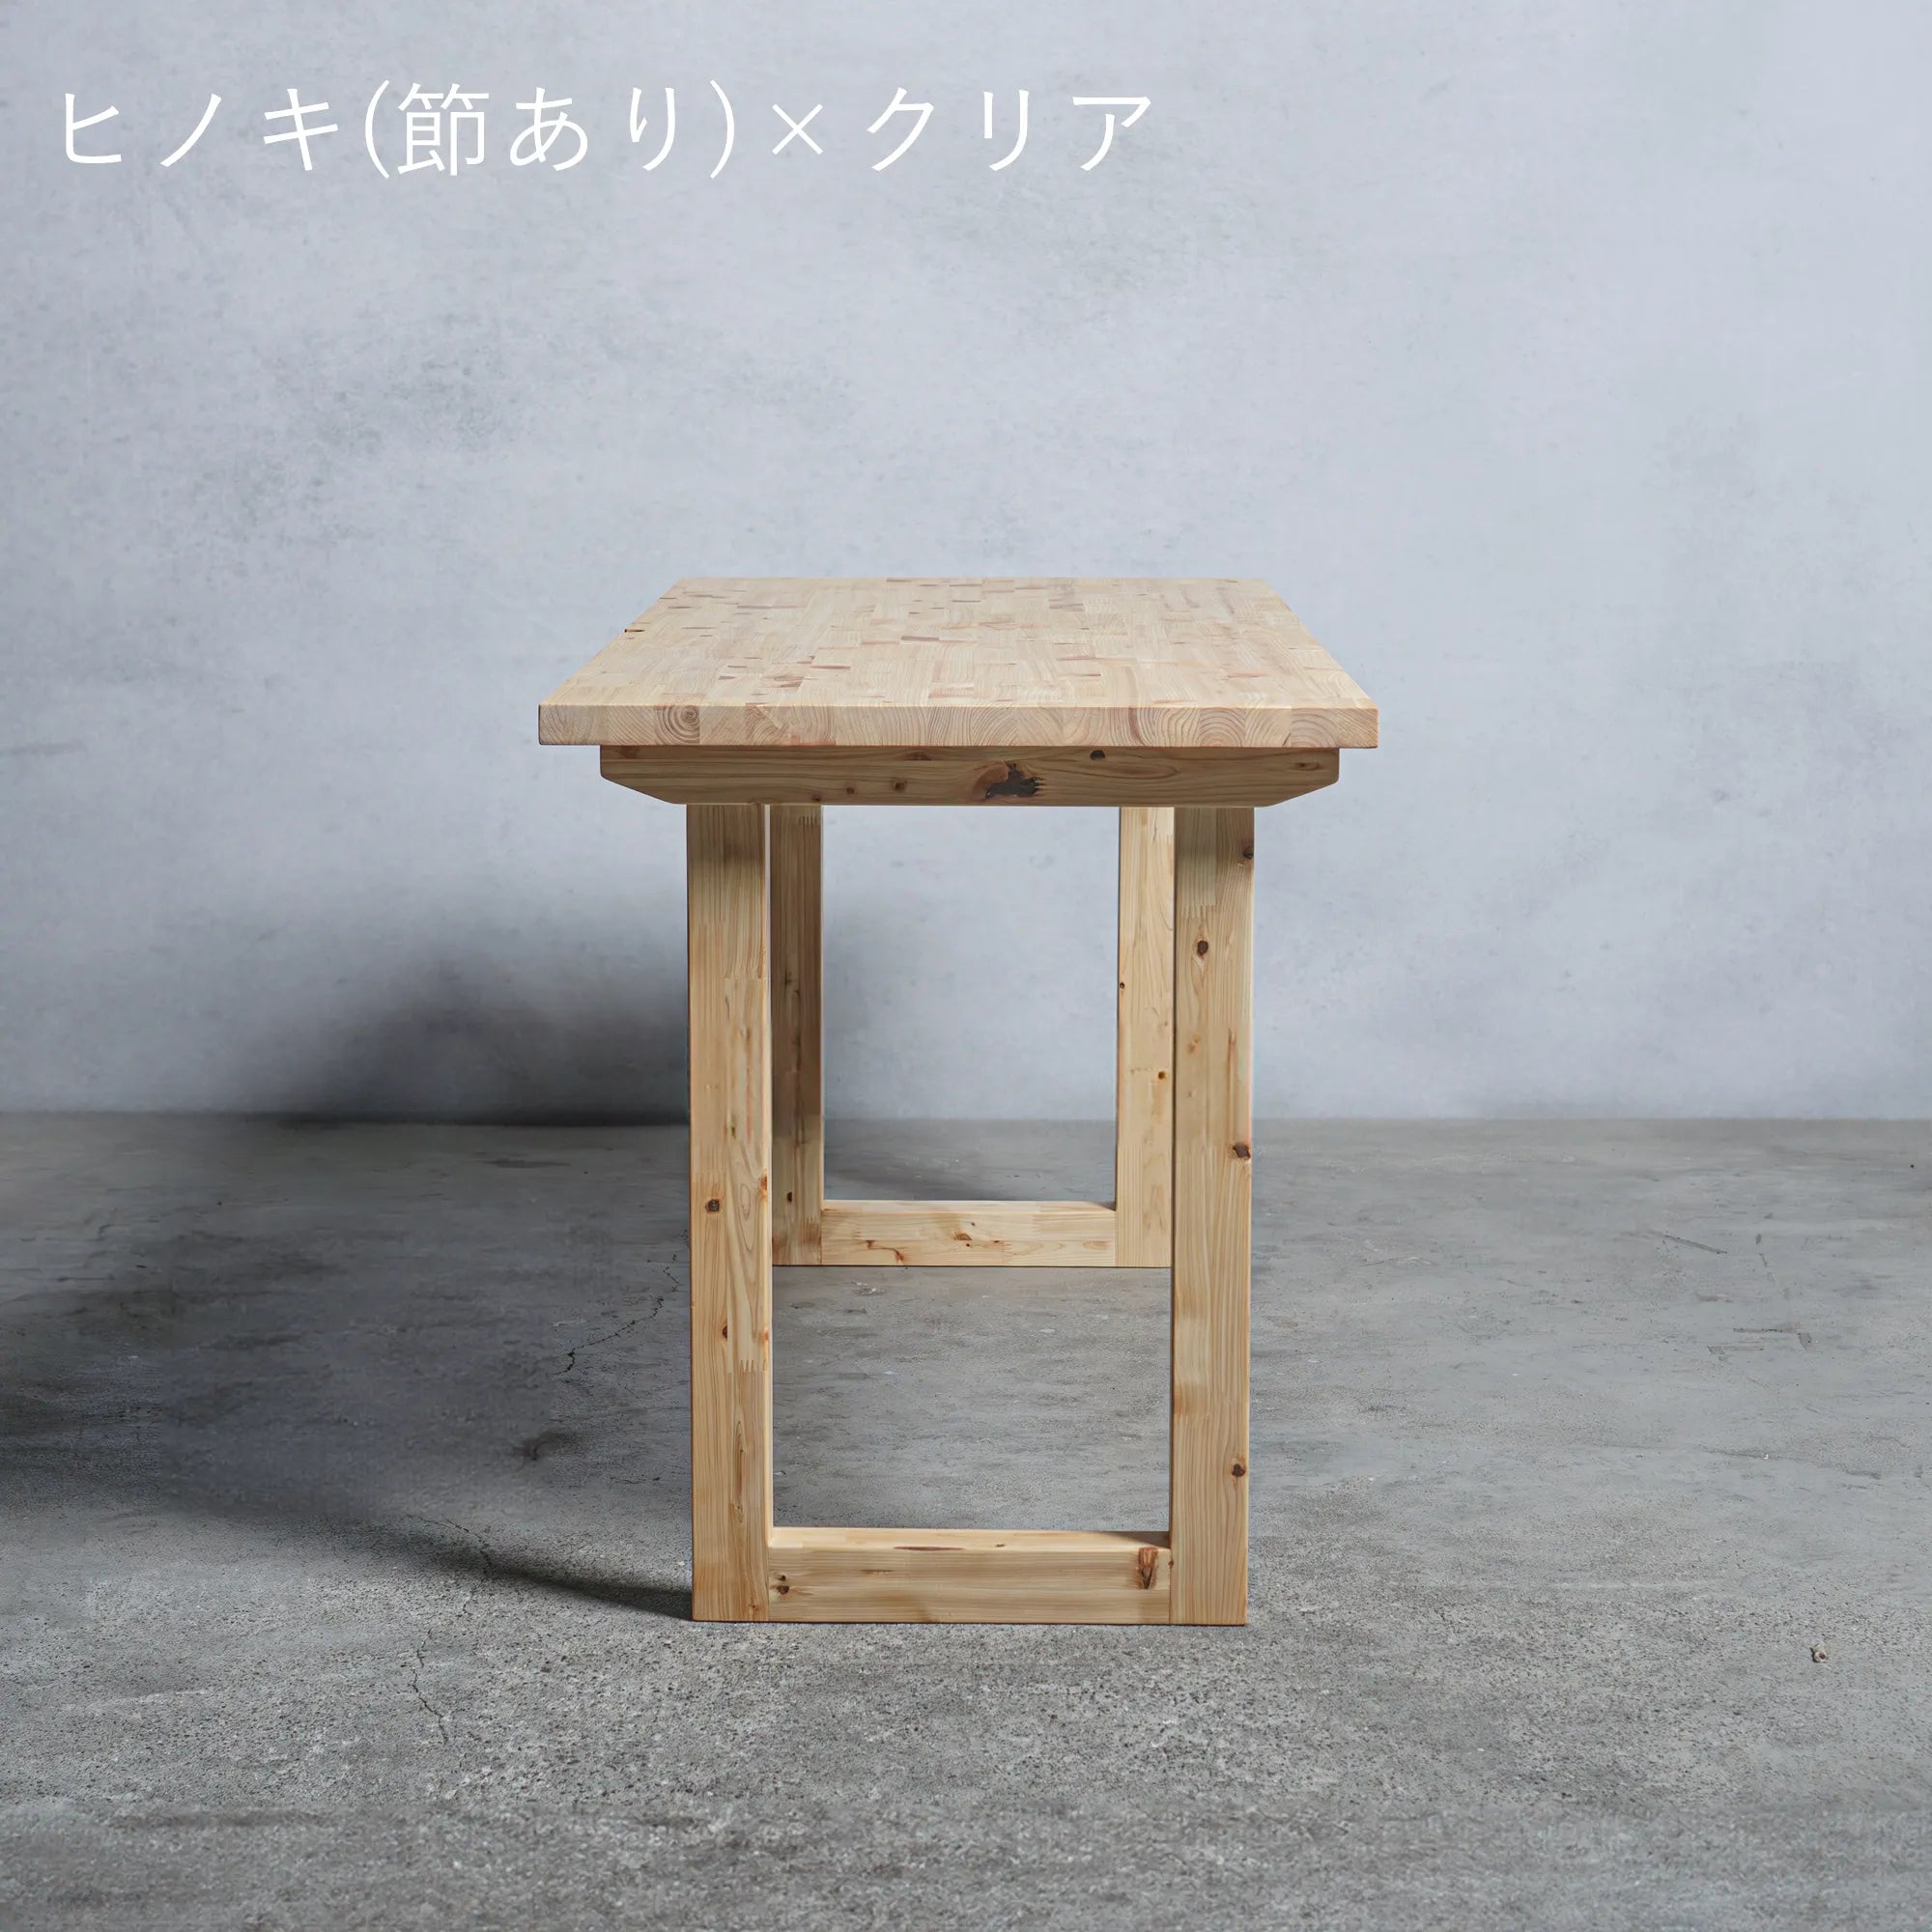 木製 オーダー テーブル / デスク  ヒノキ材 選べる脚